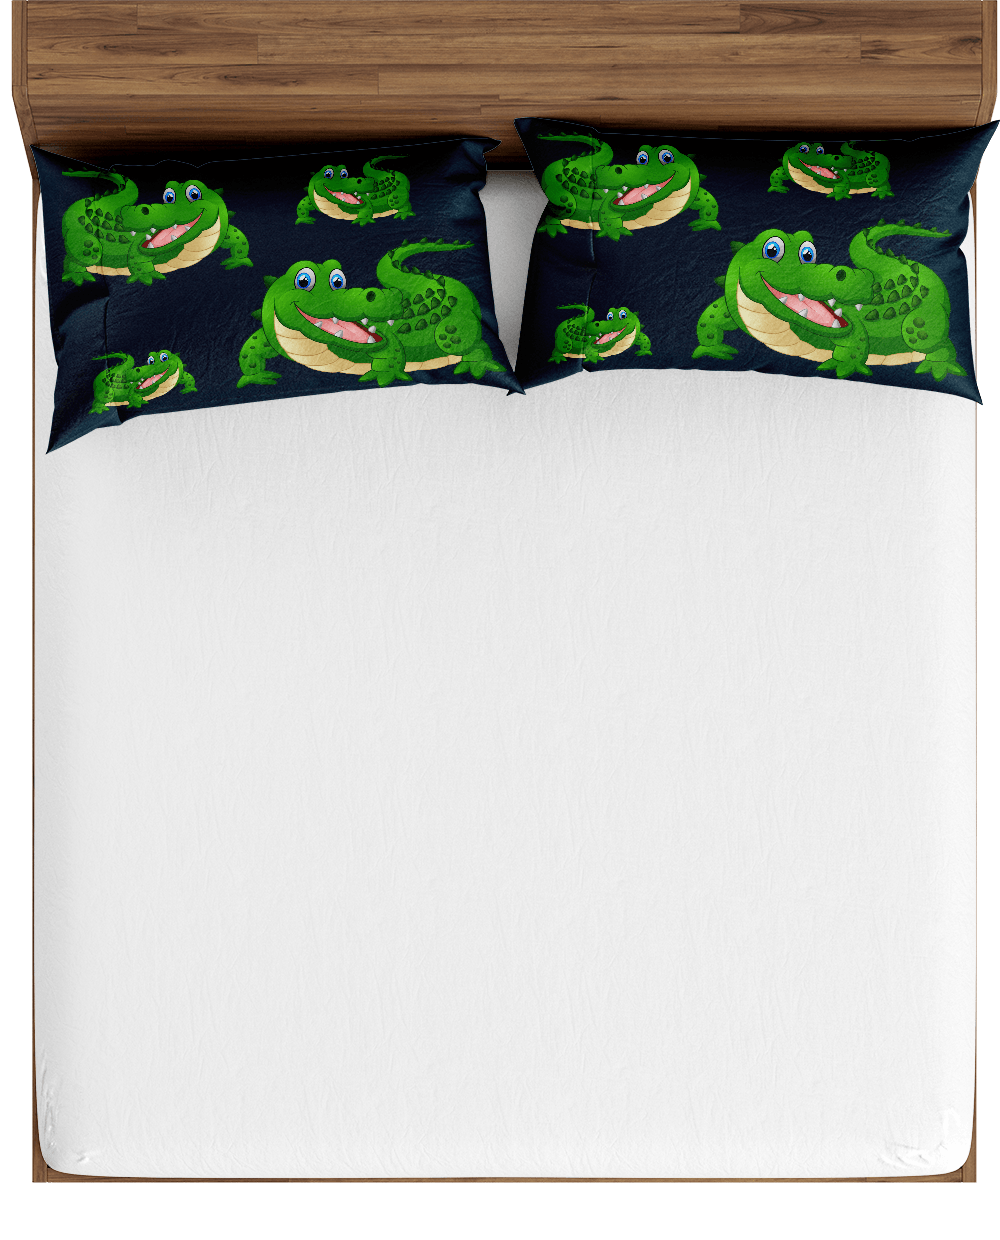 Crazy Croc Bed Pillows - fungear.com.au